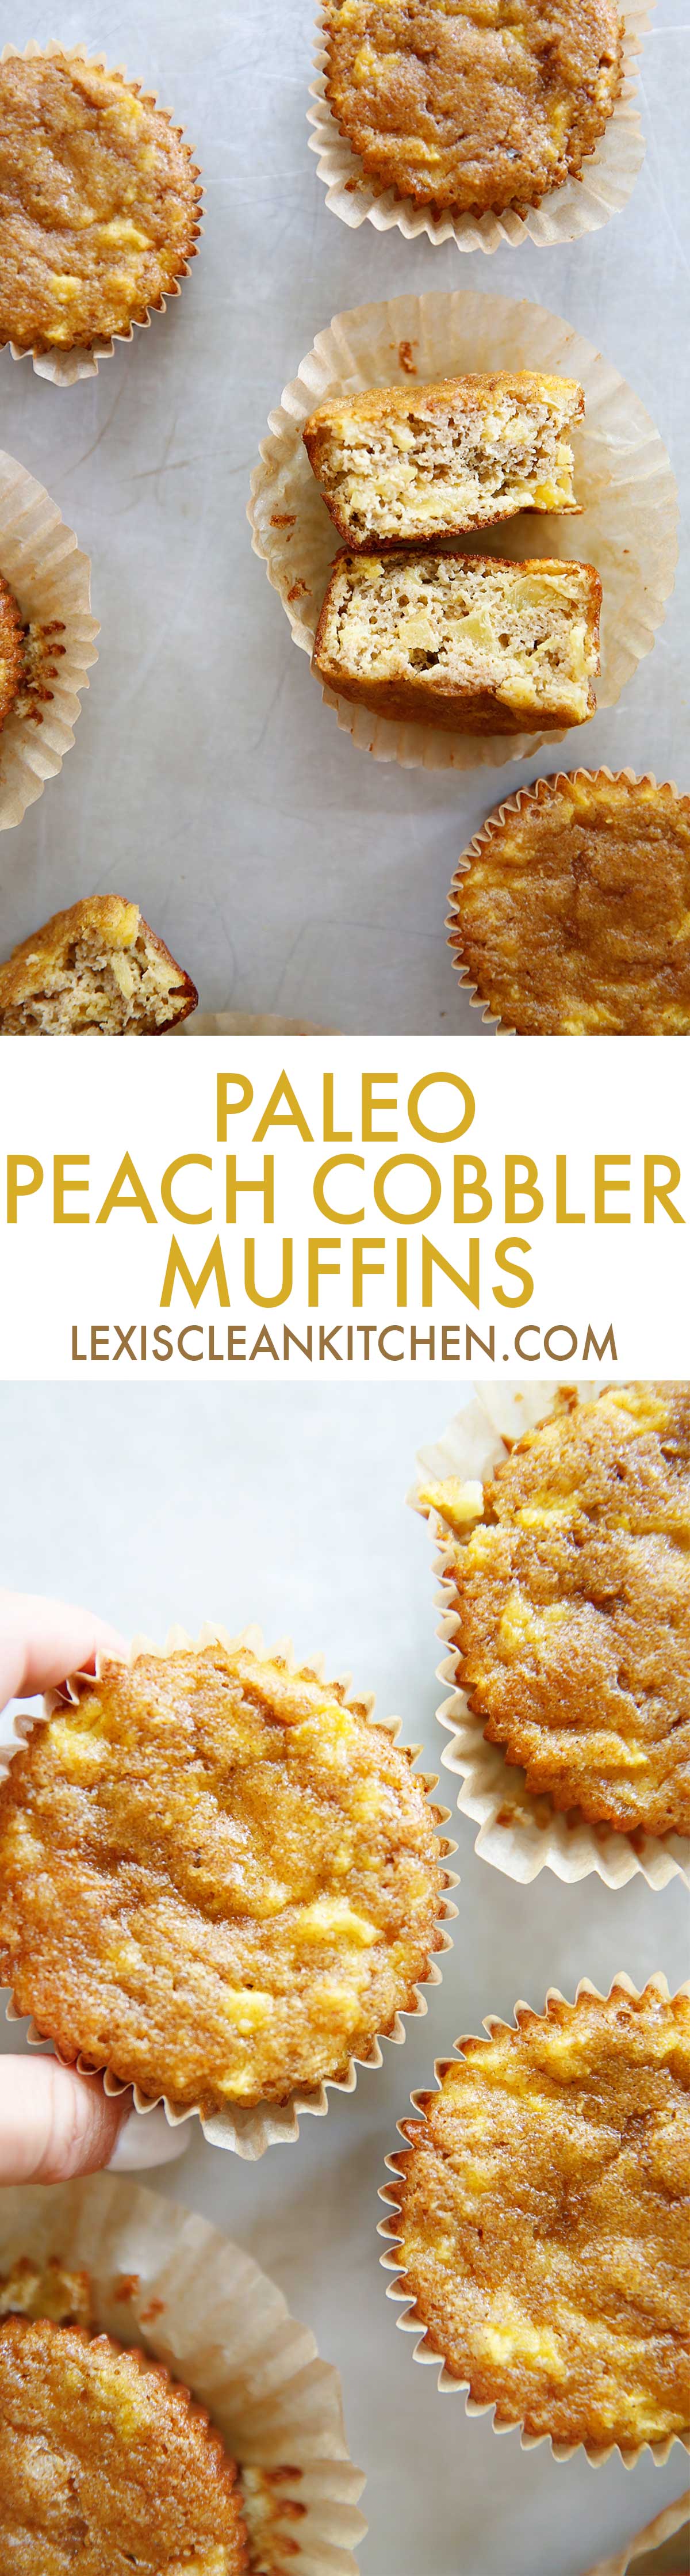 Paleo peach cobbler muffins